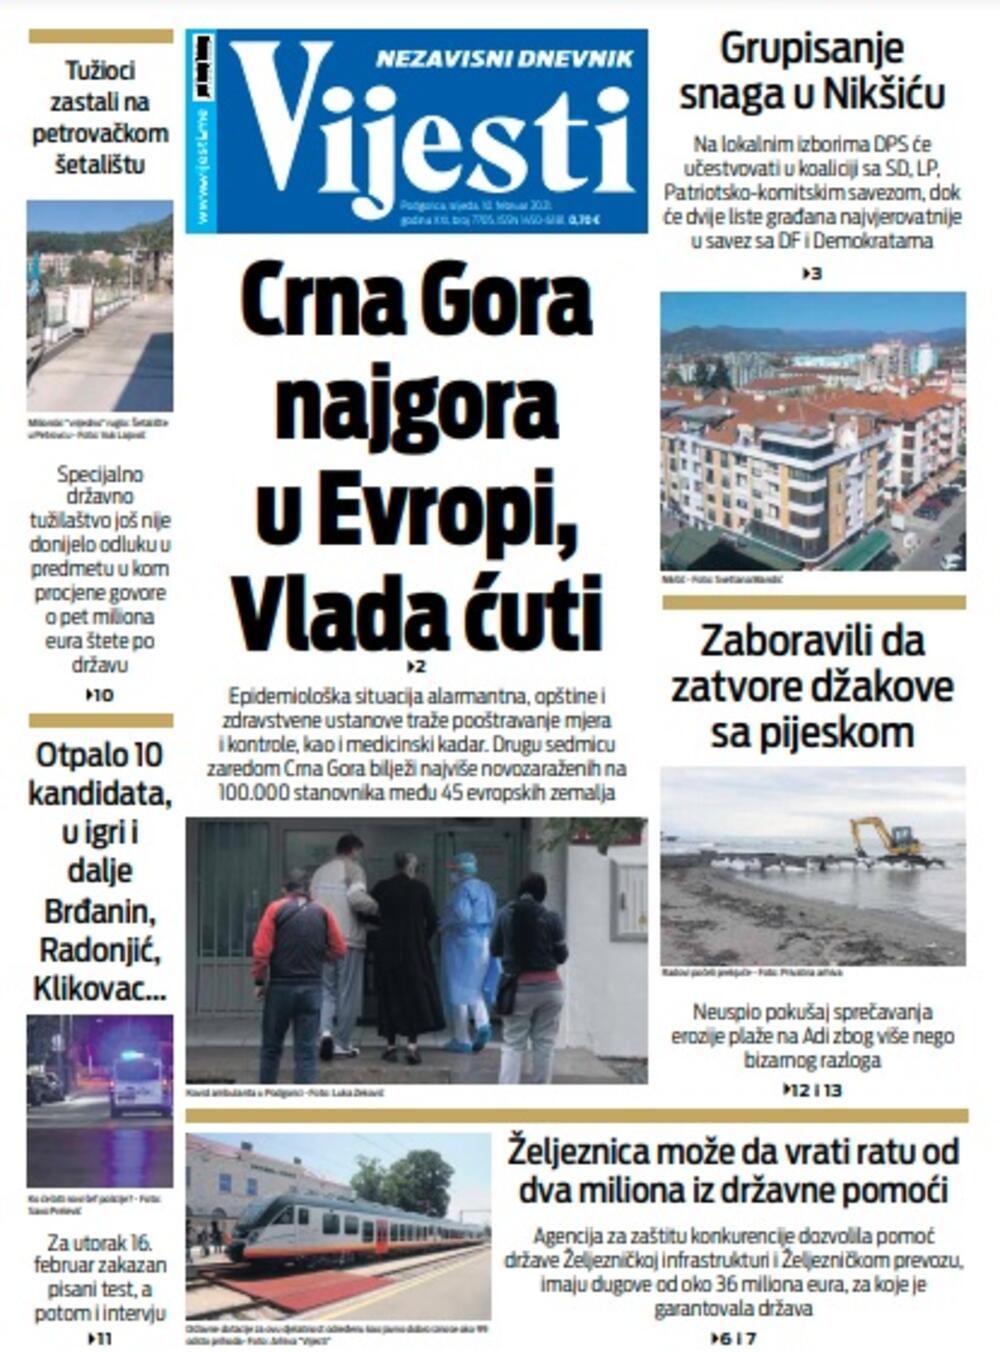 Naslovna strana "Vijesti" za srijedu 10. februar 2021. godine, Foto: Vijesti